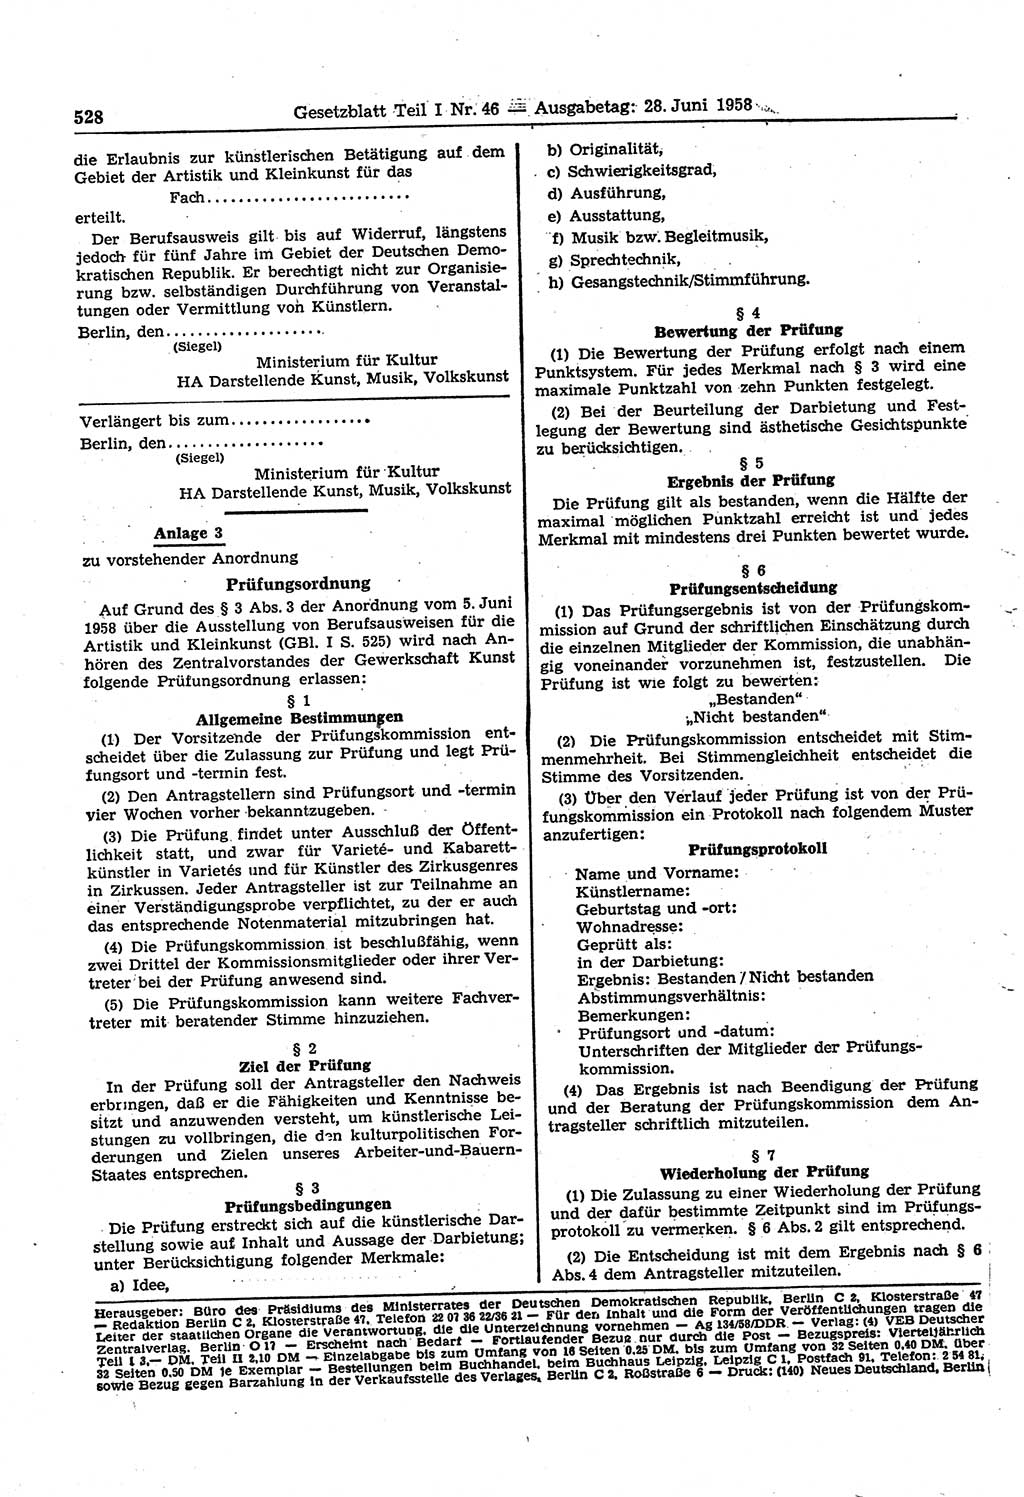 Gesetzblatt (GBl.) der Deutschen Demokratischen Republik (DDR) Teil Ⅰ 1958, Seite 528 (GBl. DDR Ⅰ 1958, S. 528)